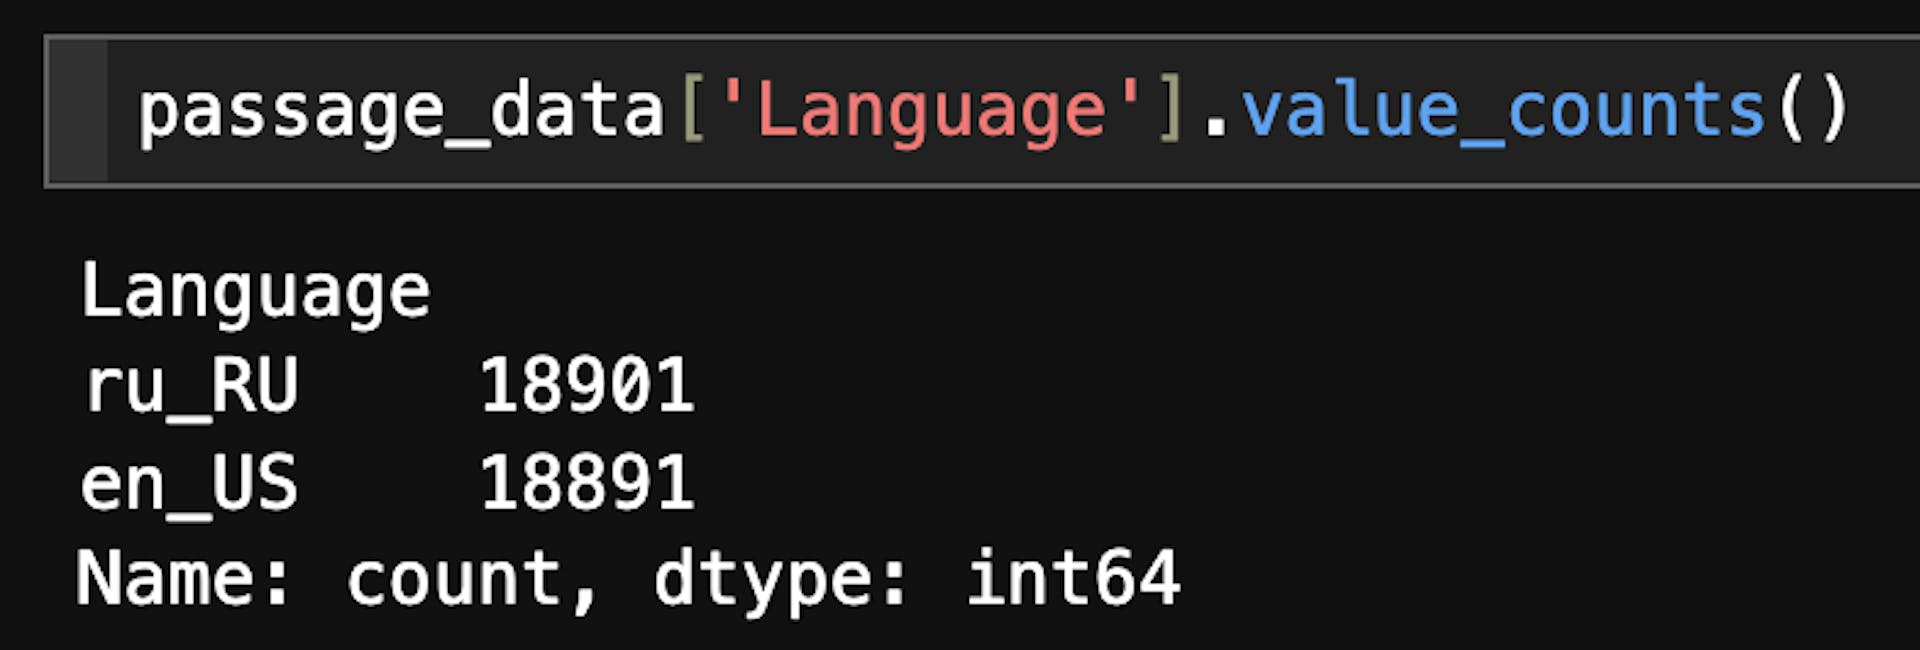 language count in dataset